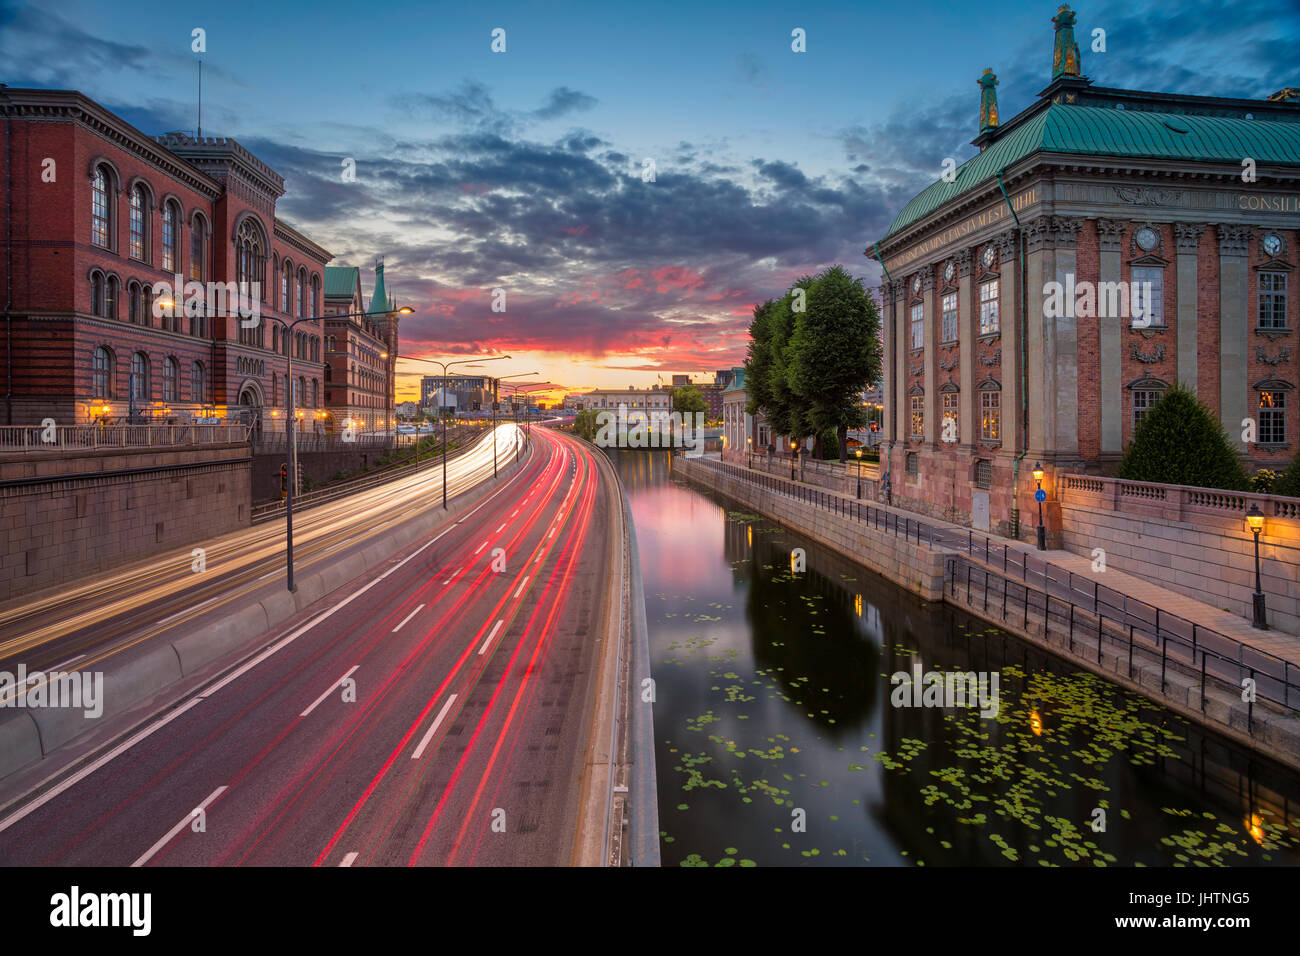 Stoccolma. Immagine della città vecchia di Stoccolma, in Svezia durante il tramonto. Foto Stock